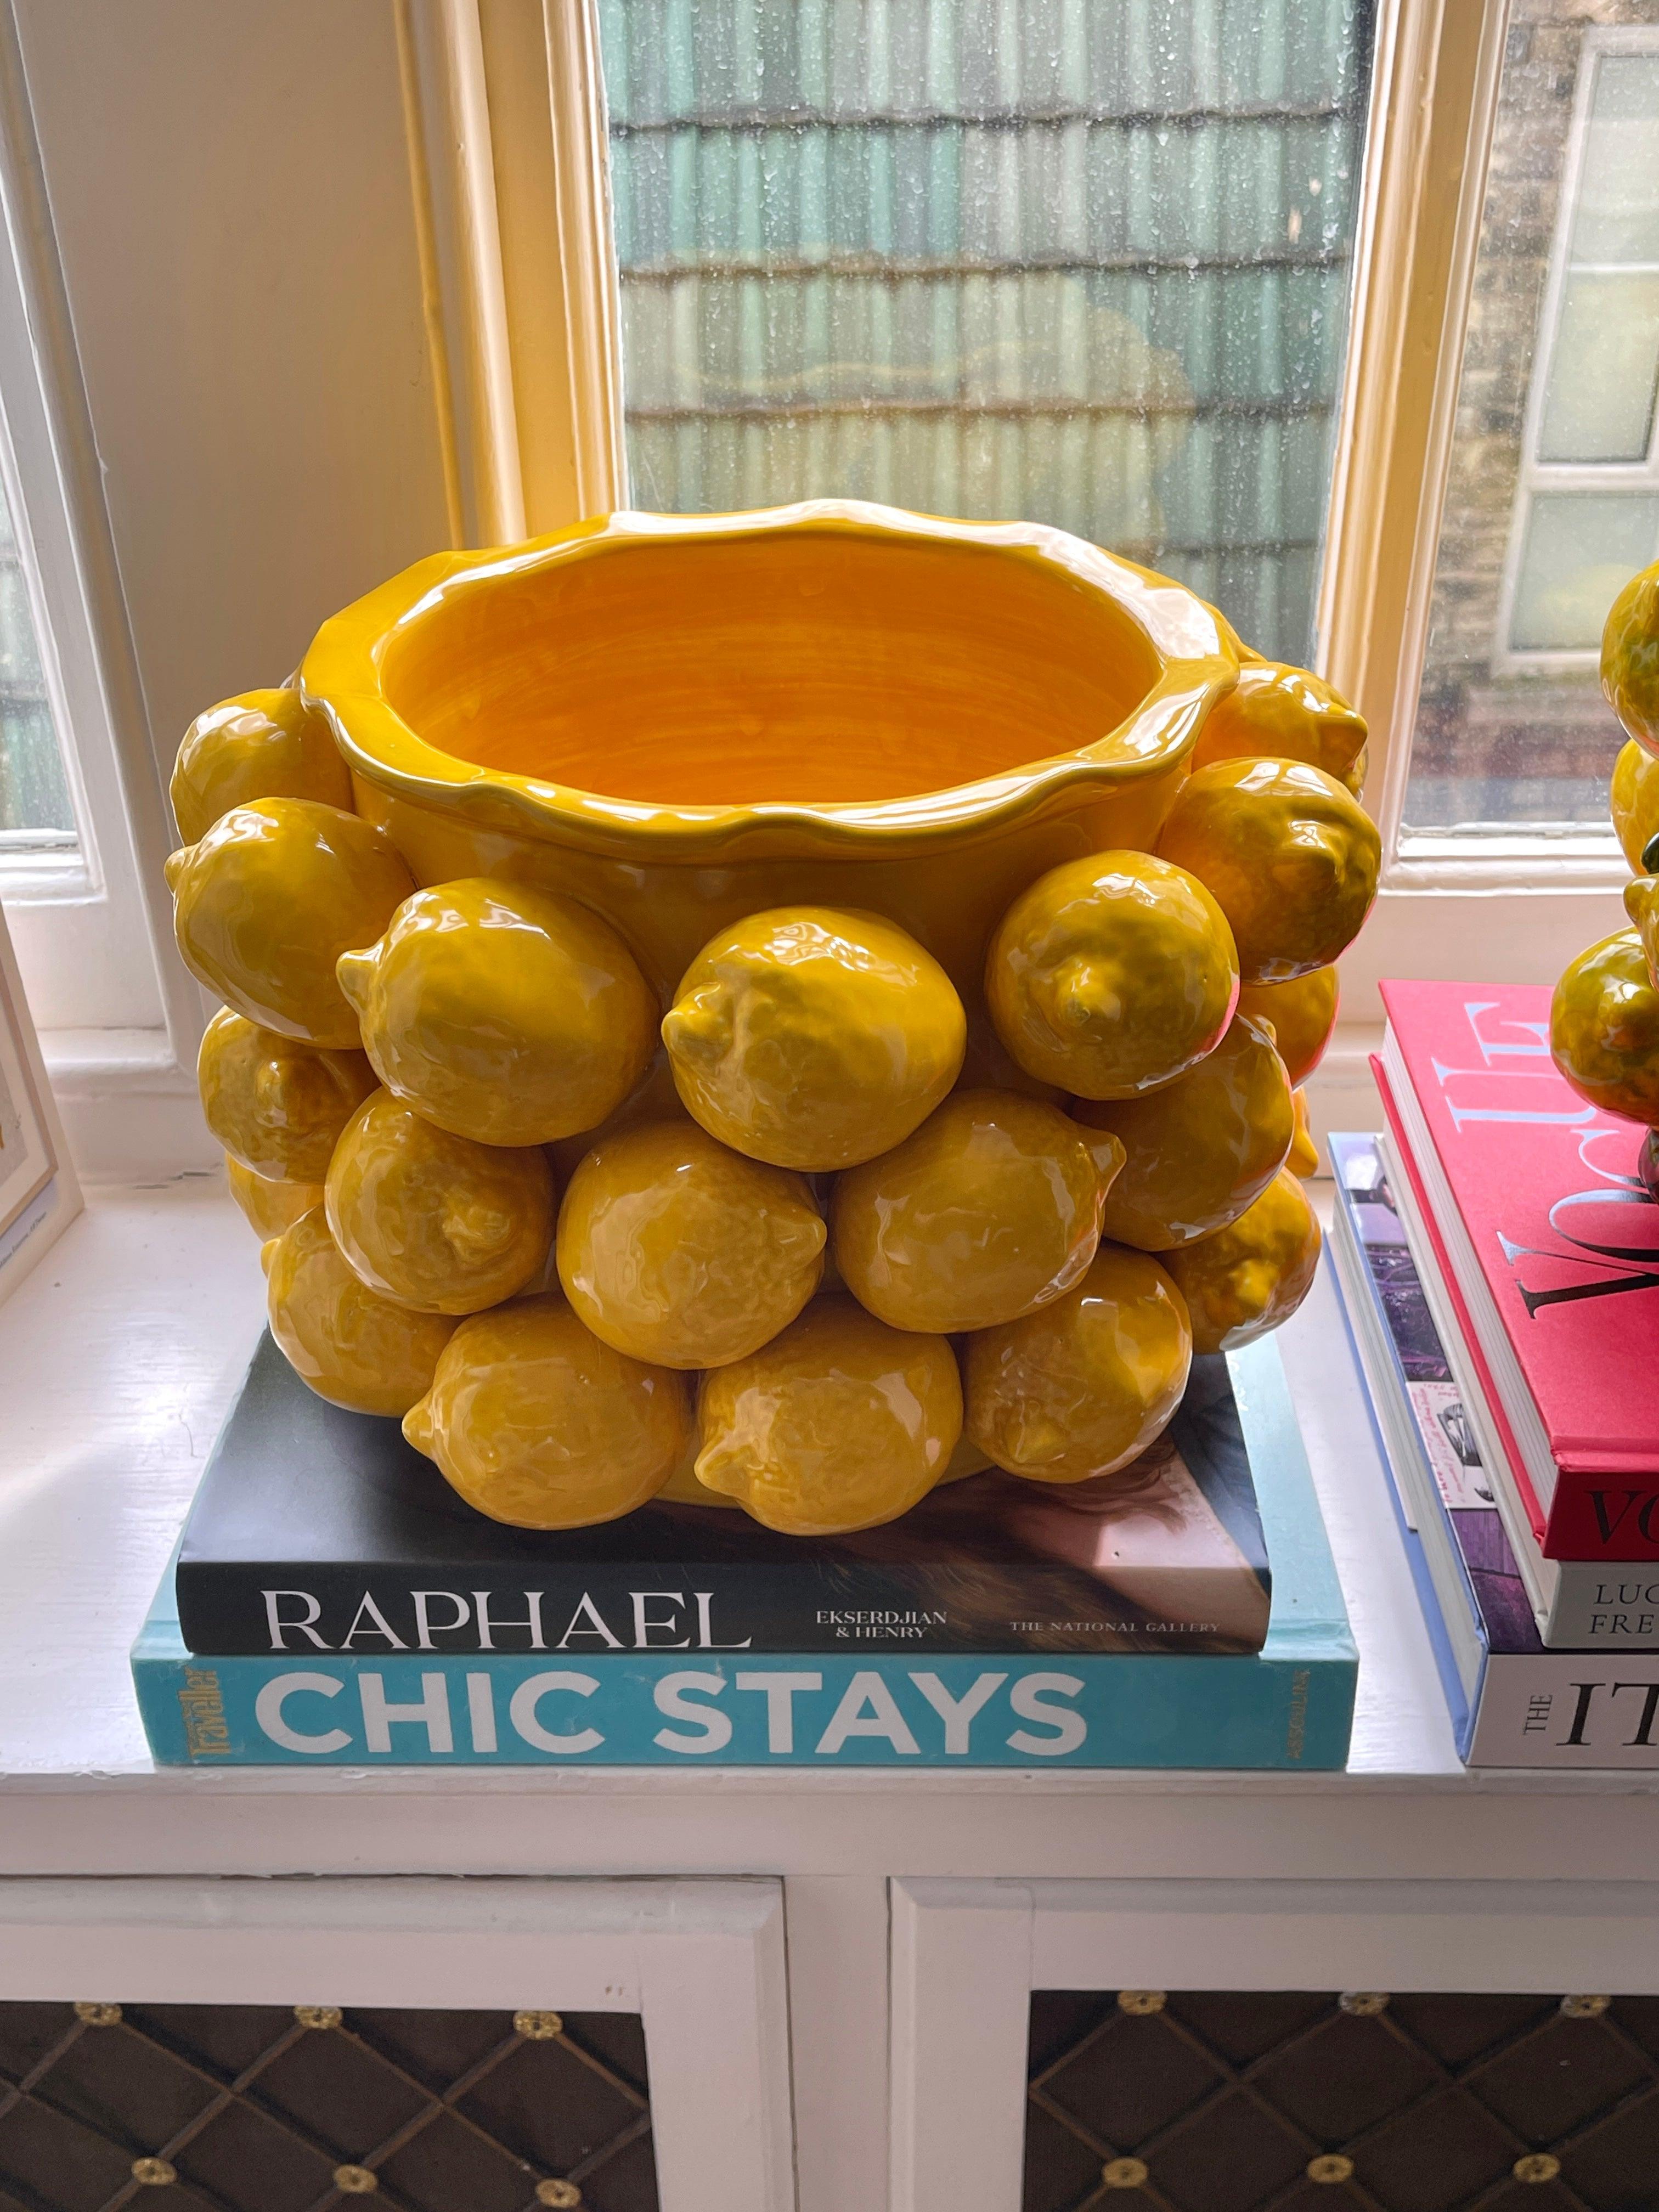 Large Sicilian Lemon Vase - THEHOUSEFUL